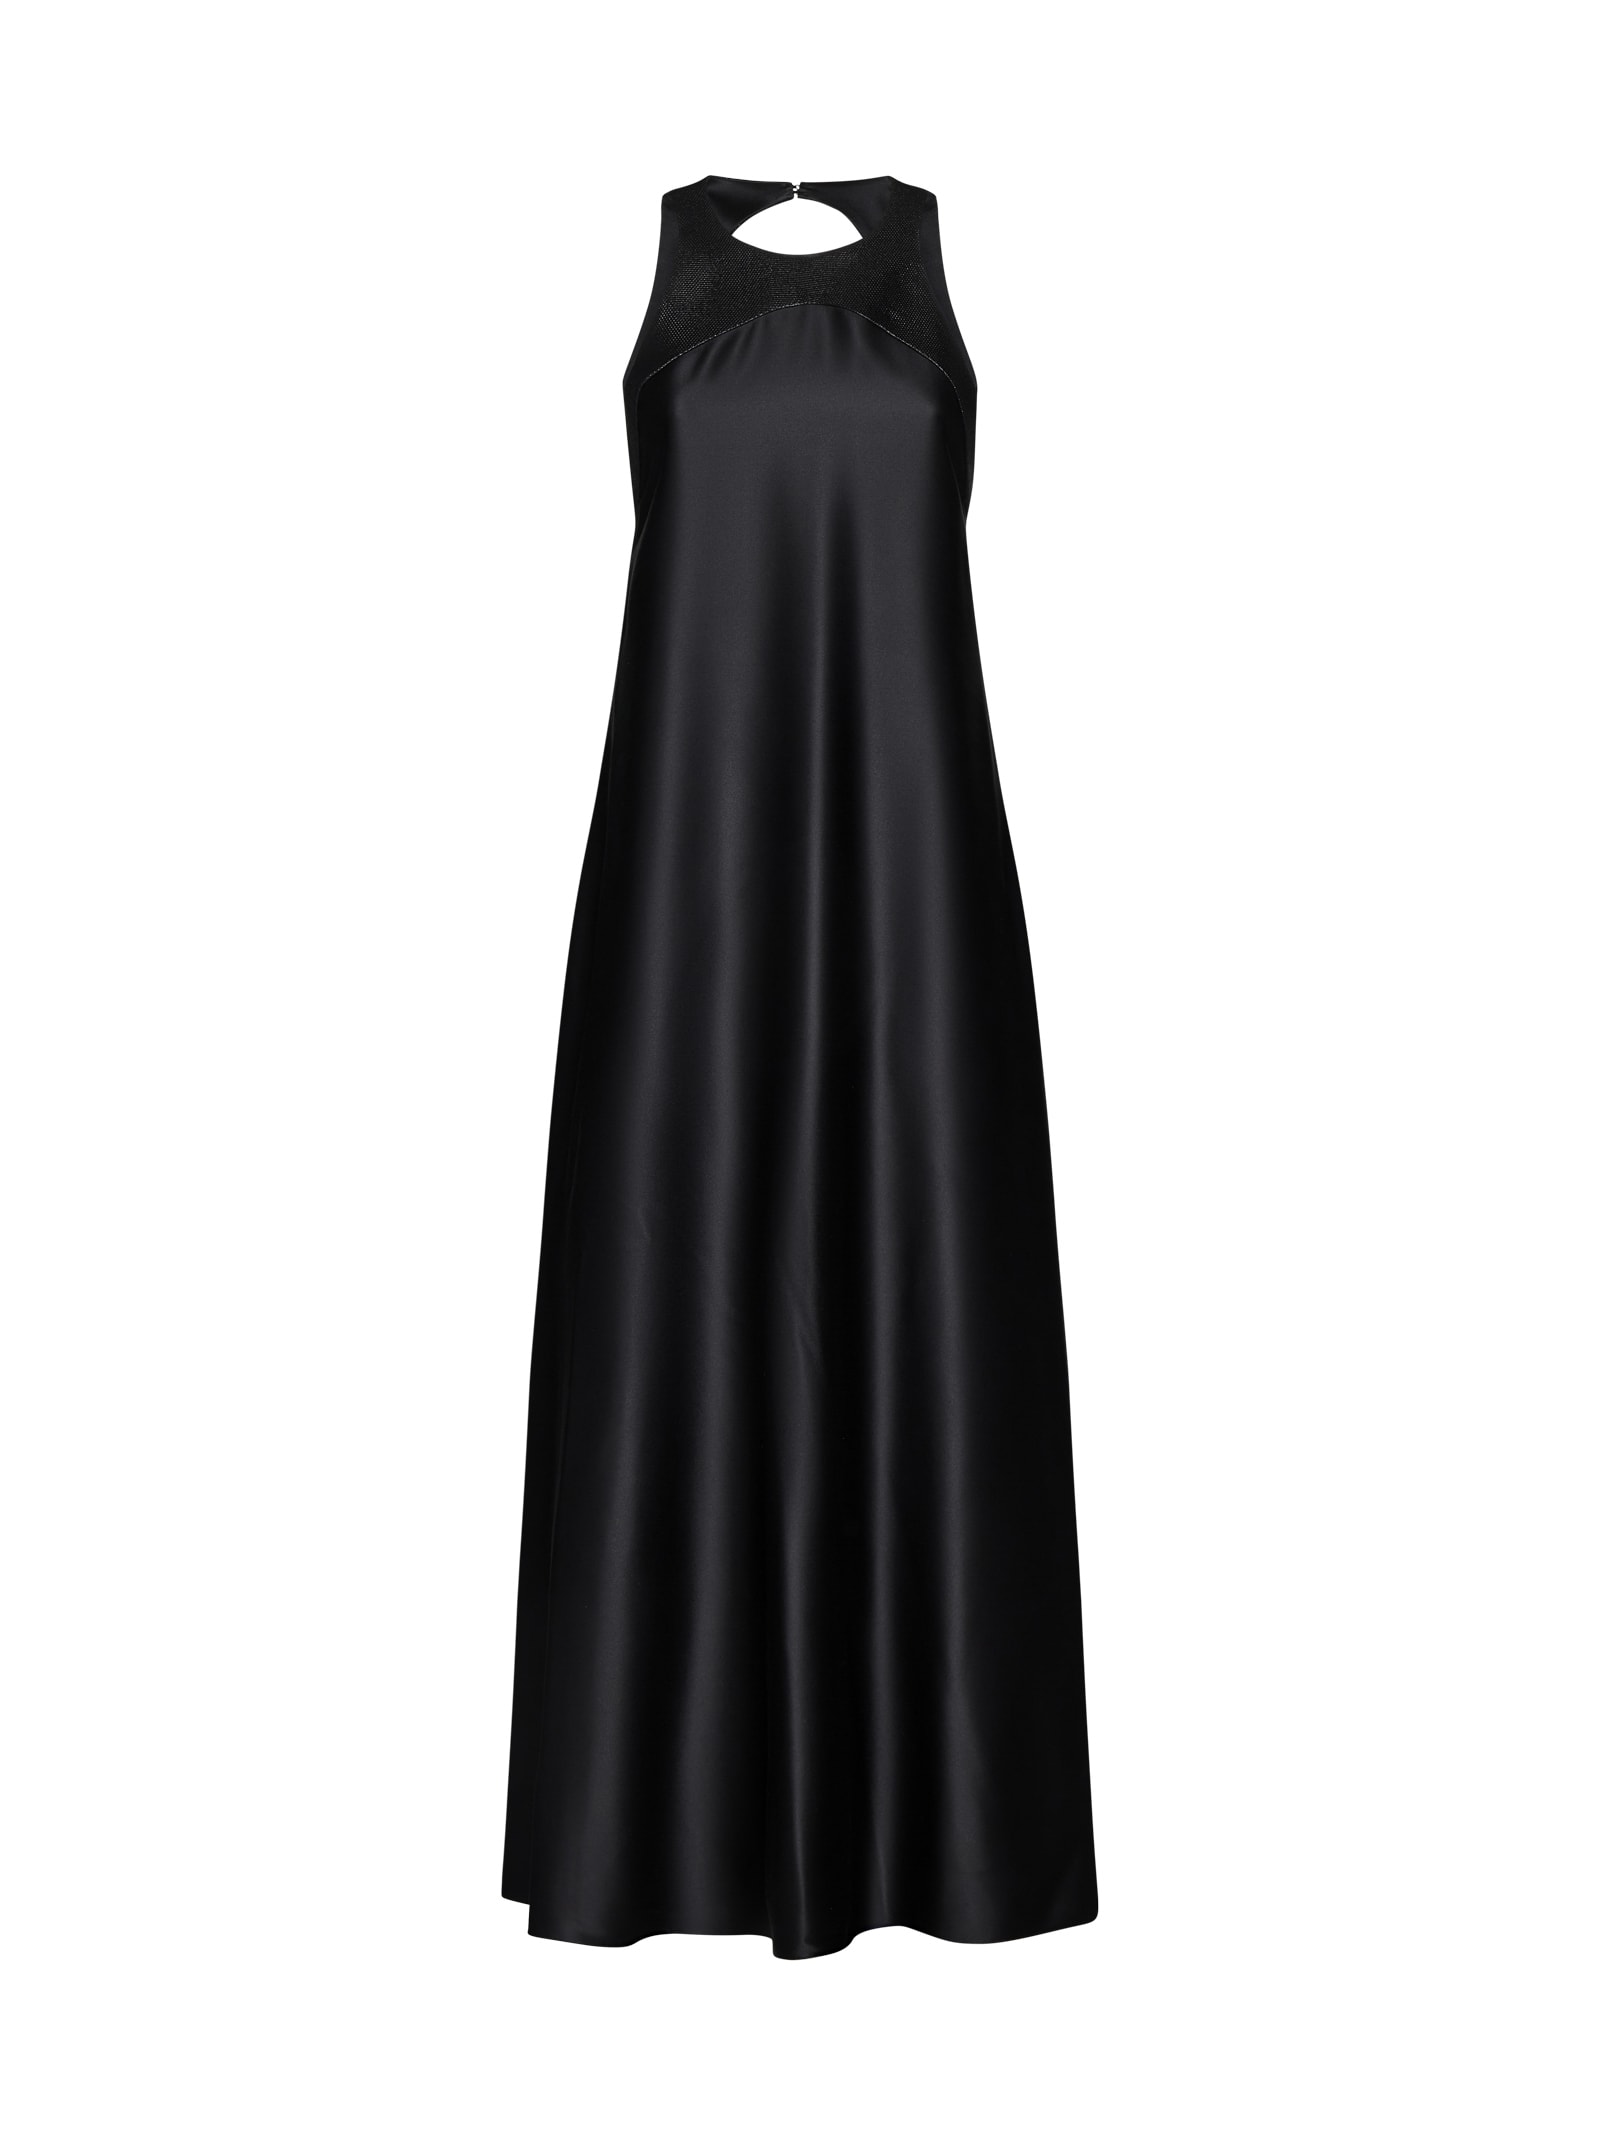 Giorgio Armani Dress In Black Beauty